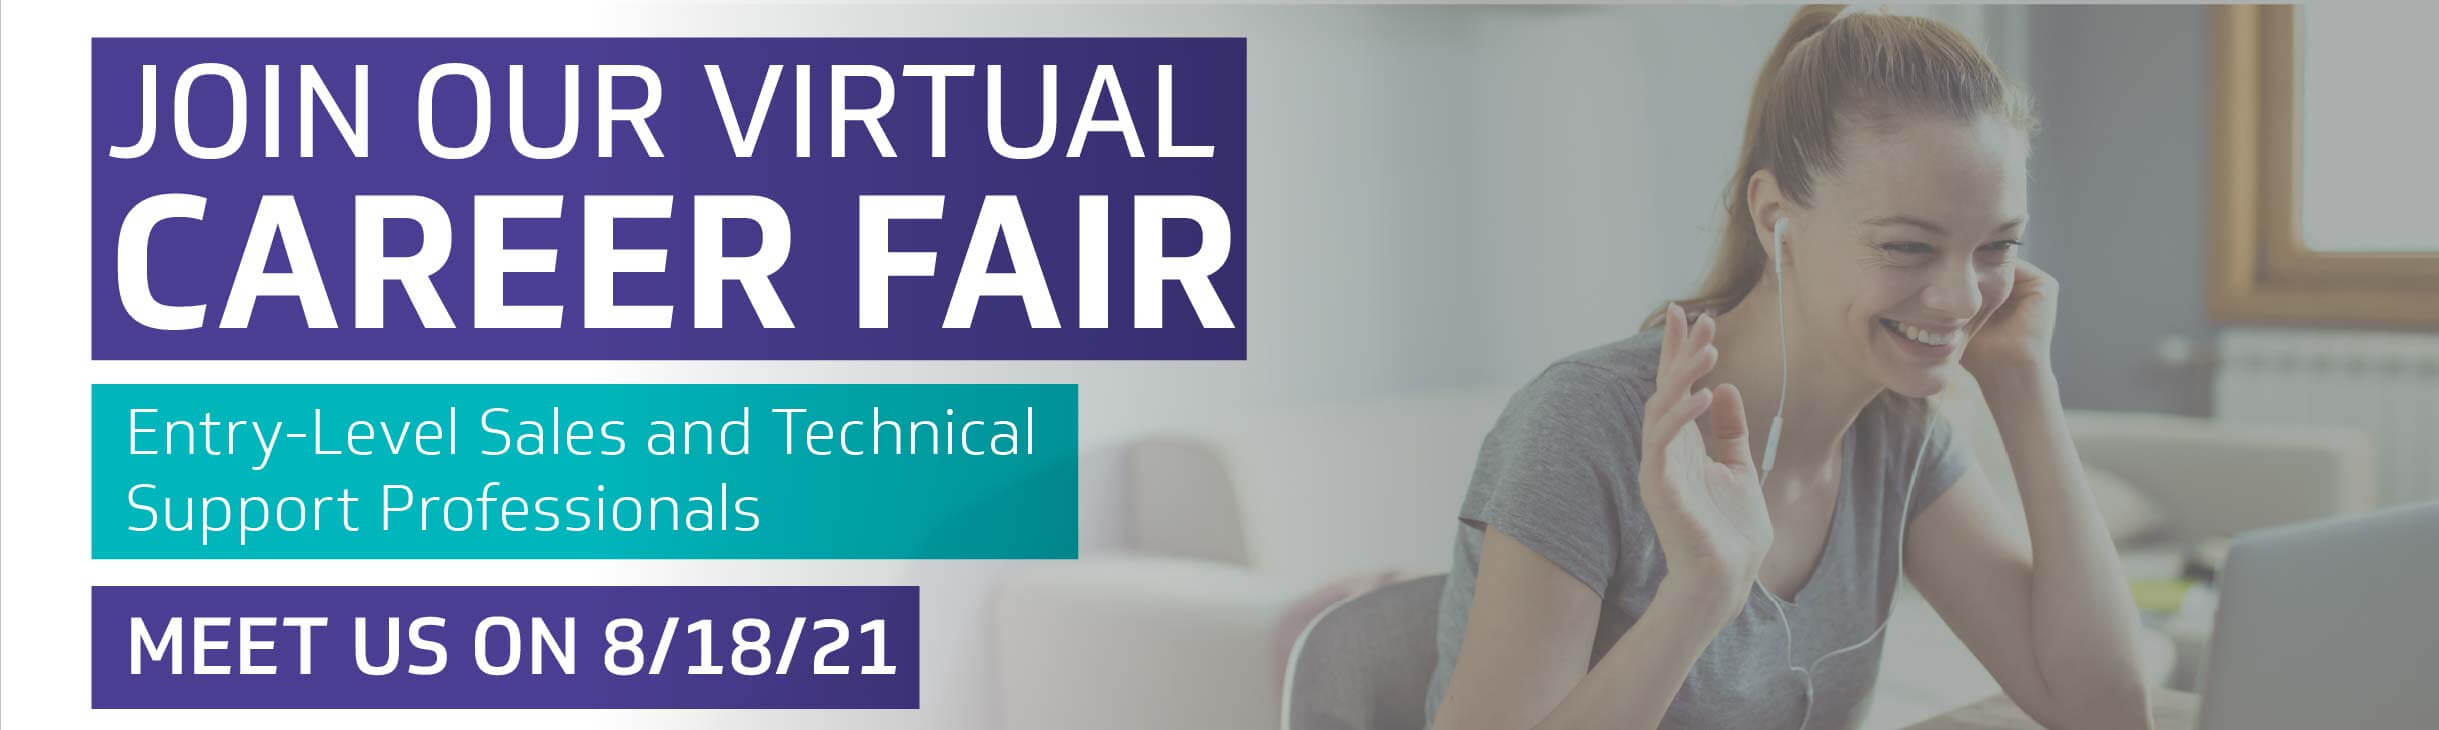 Join Our Virtual Career Fair on August 18